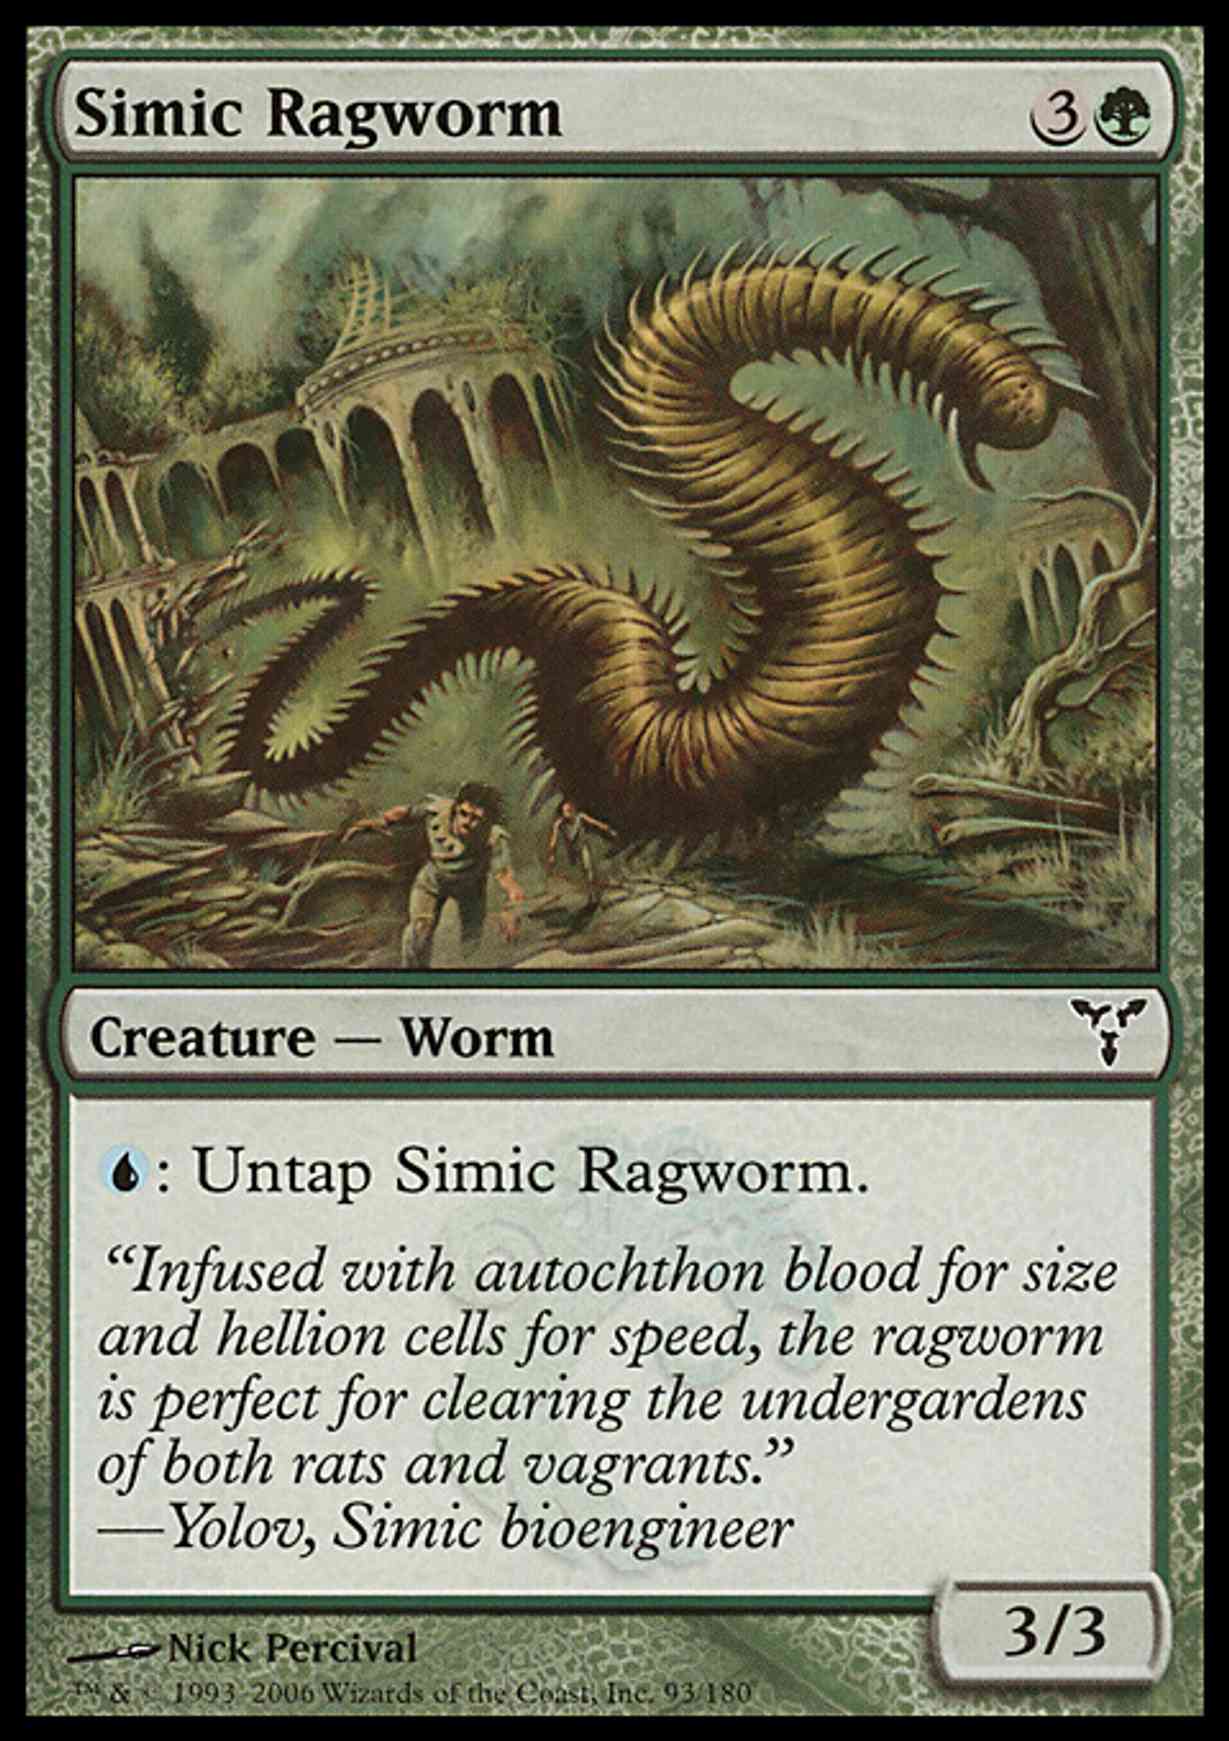 Simic Ragworm magic card front